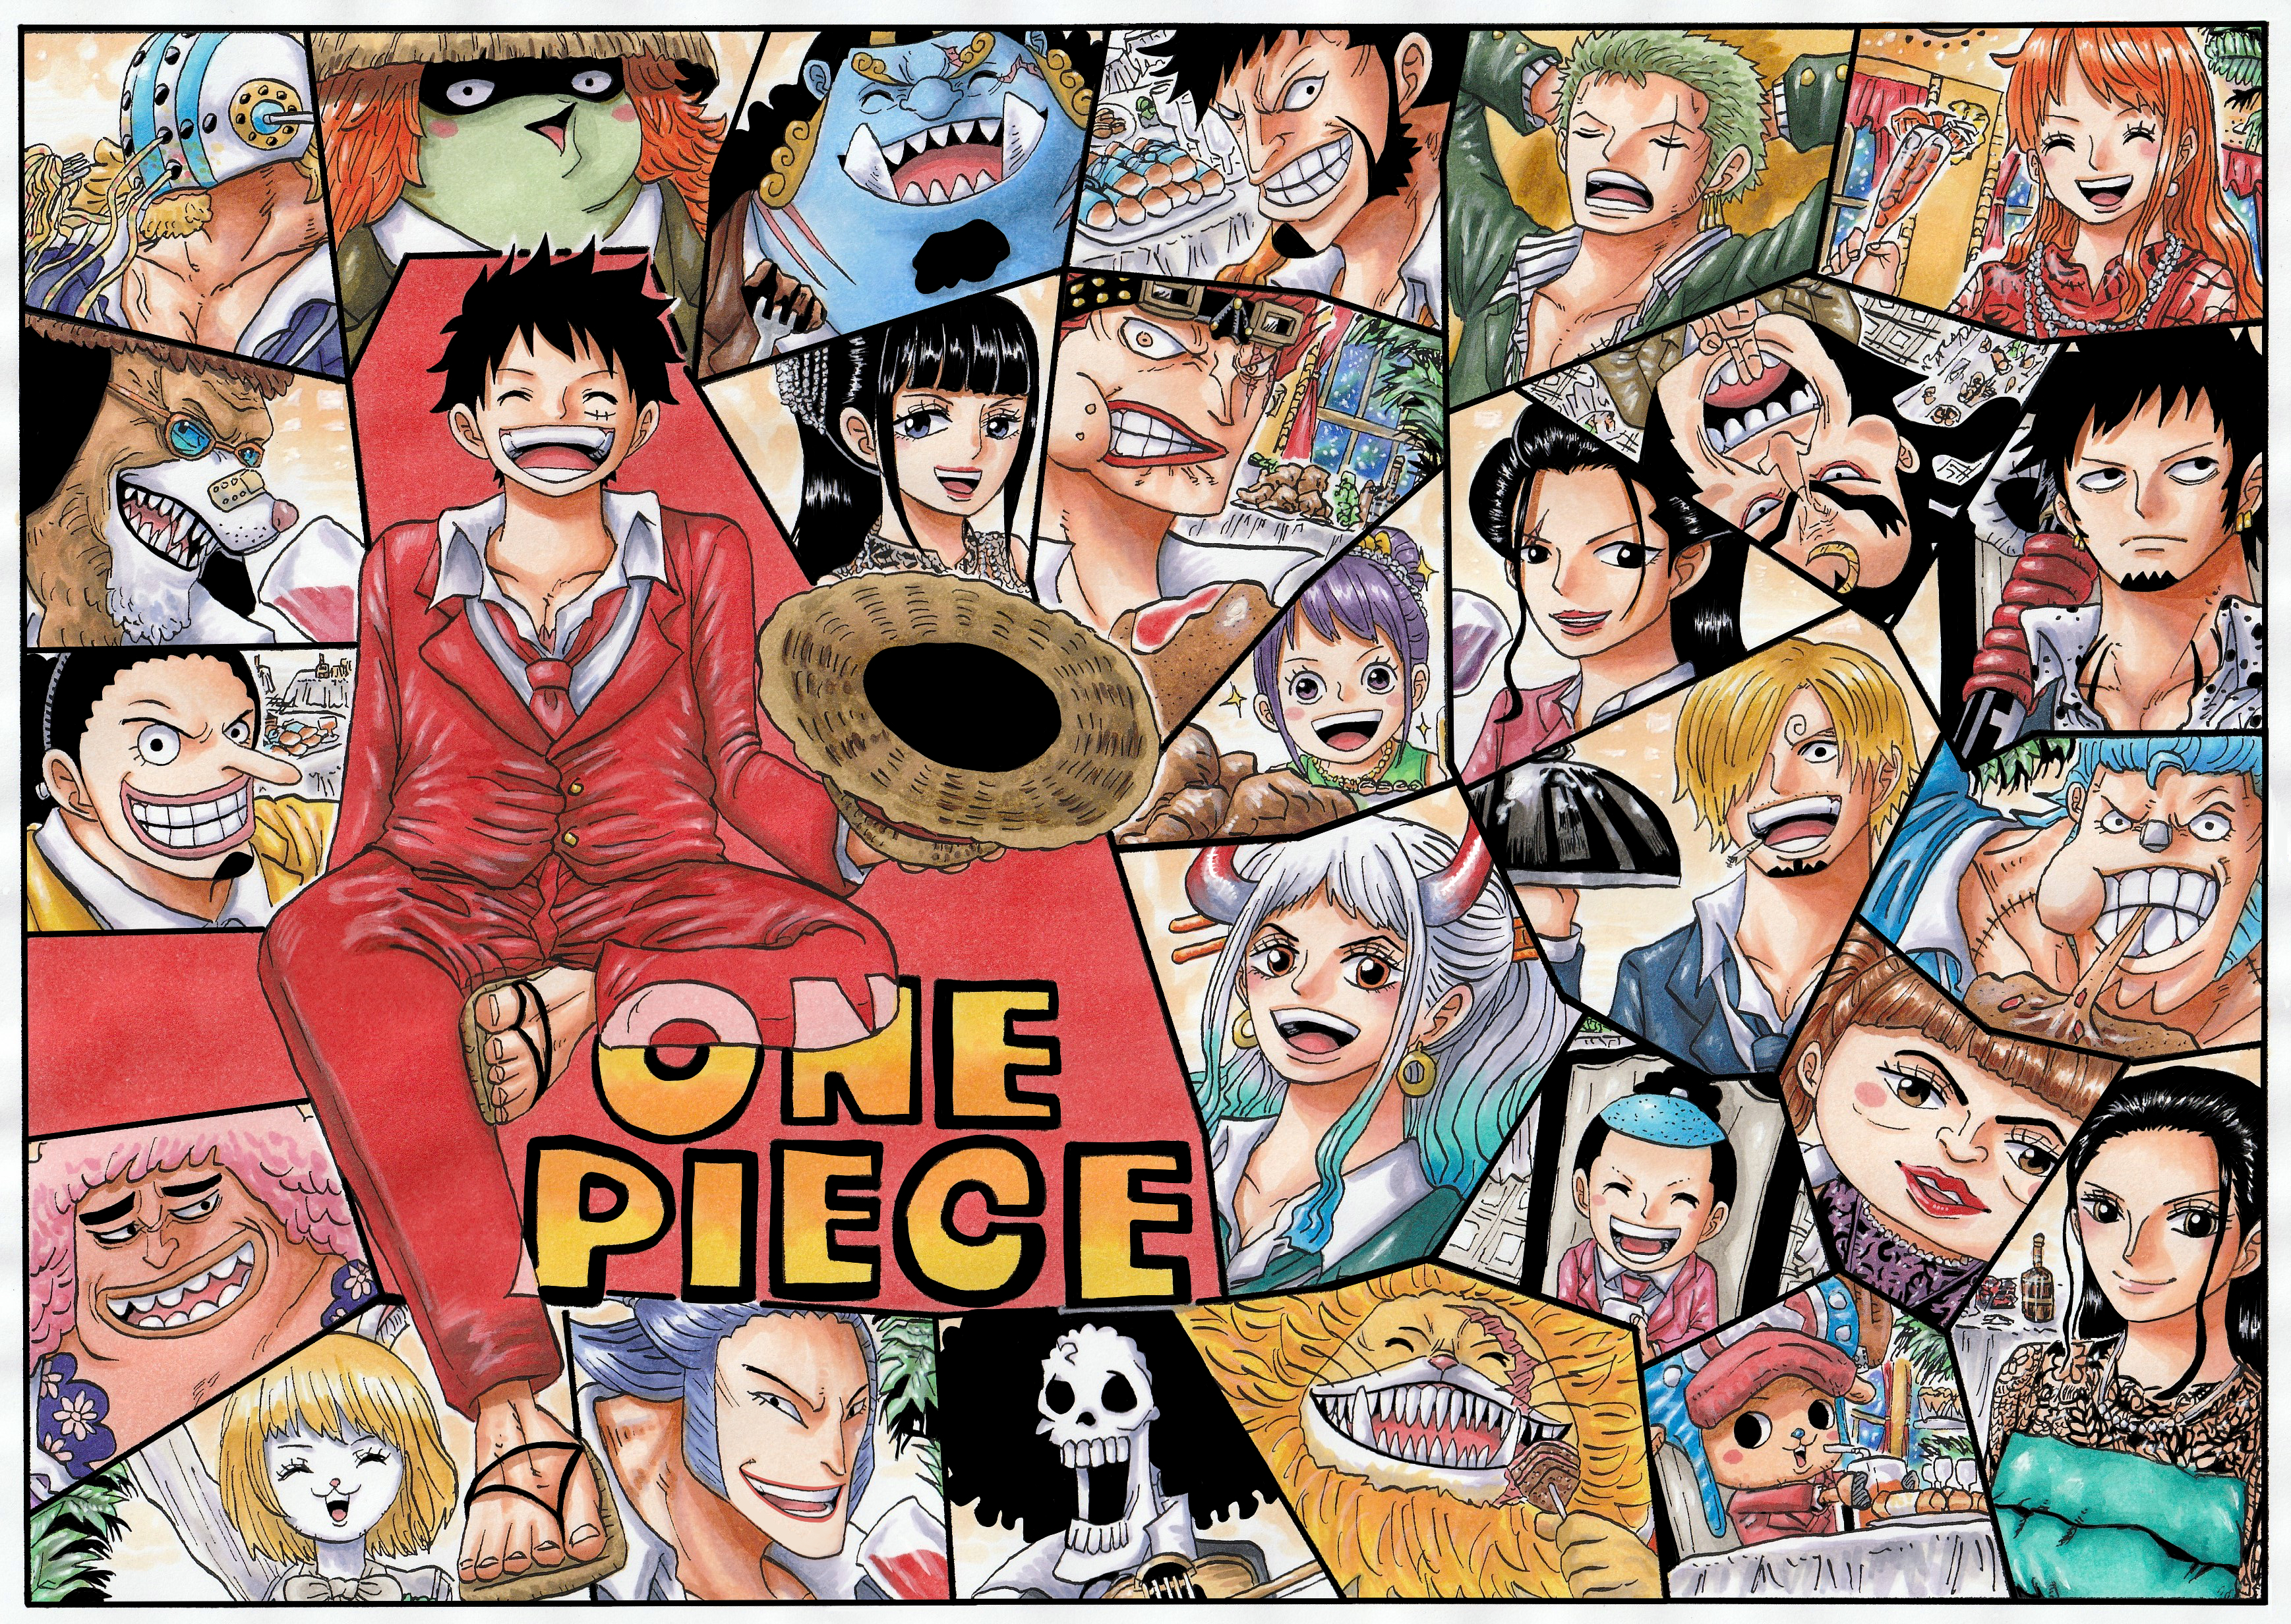 Download mobile wallpaper Anime, One Piece, Tony Tony Chopper, Yamato (Naruto), Usopp (One Piece), Roronoa Zoro, Monkey D Luffy, Nami (One Piece), Sanji (One Piece), Brook (One Piece), Nico Robin, Franky (One Piece), Trafalgar Law, Jinbe (One Piece), Eustass Kid, Carrot (One Piece), Yamato (One Piece) for free.